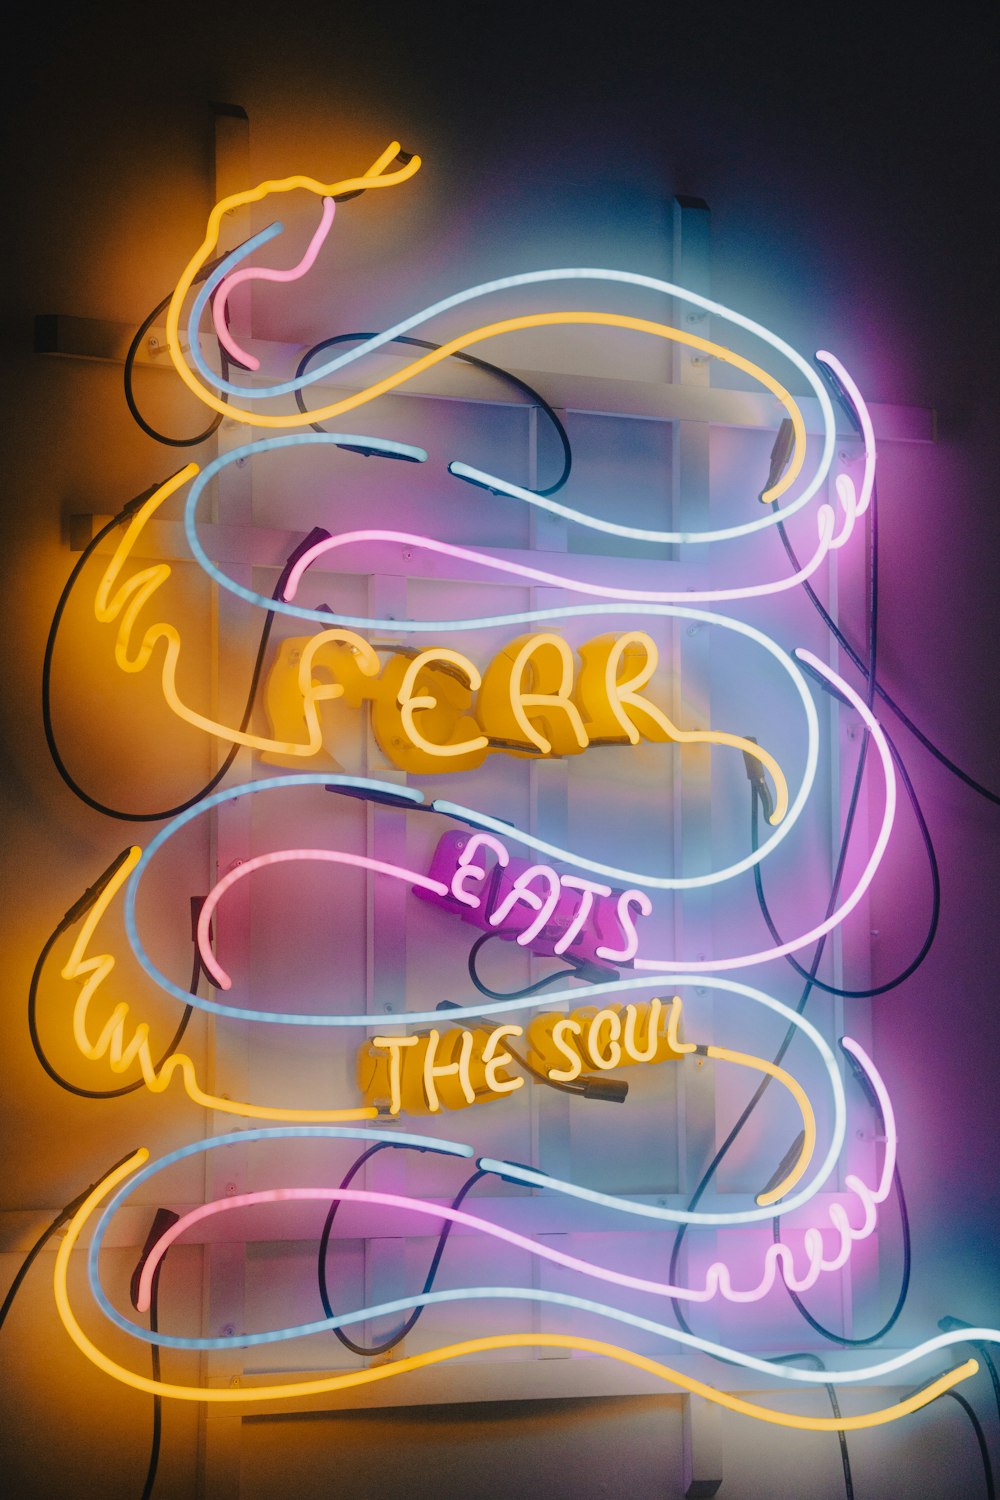 Un'insegna al neon che dice che la paura mangia l'anima